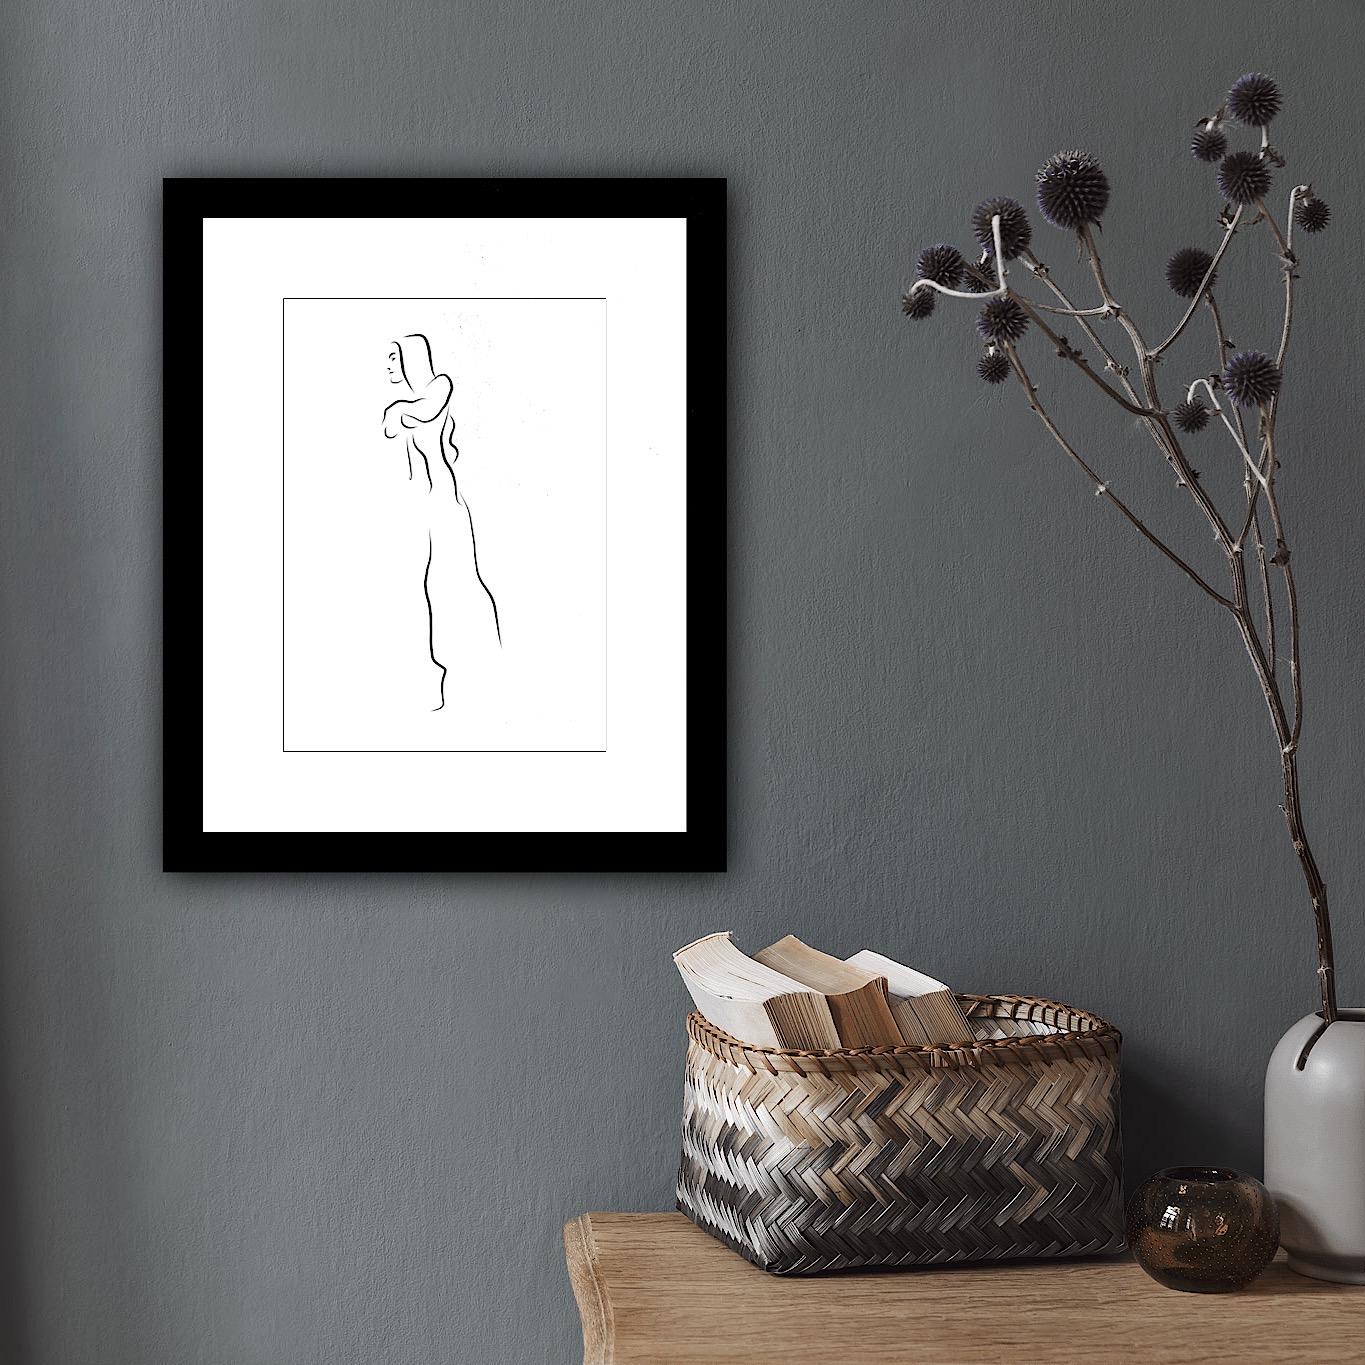 Haiku #12, 1/50  - Digital Vector Drawing B&W Walking Female Nude Woman Figure - Black Nude Print by Michael Binkley